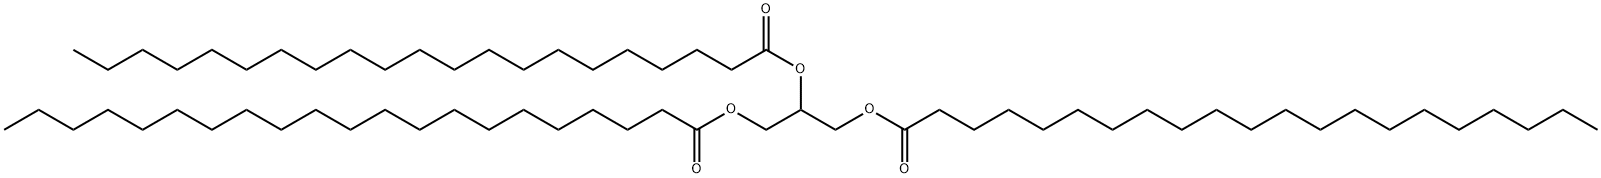 TRIHENEICOSANOIN|二十一烷酸甘油三酯